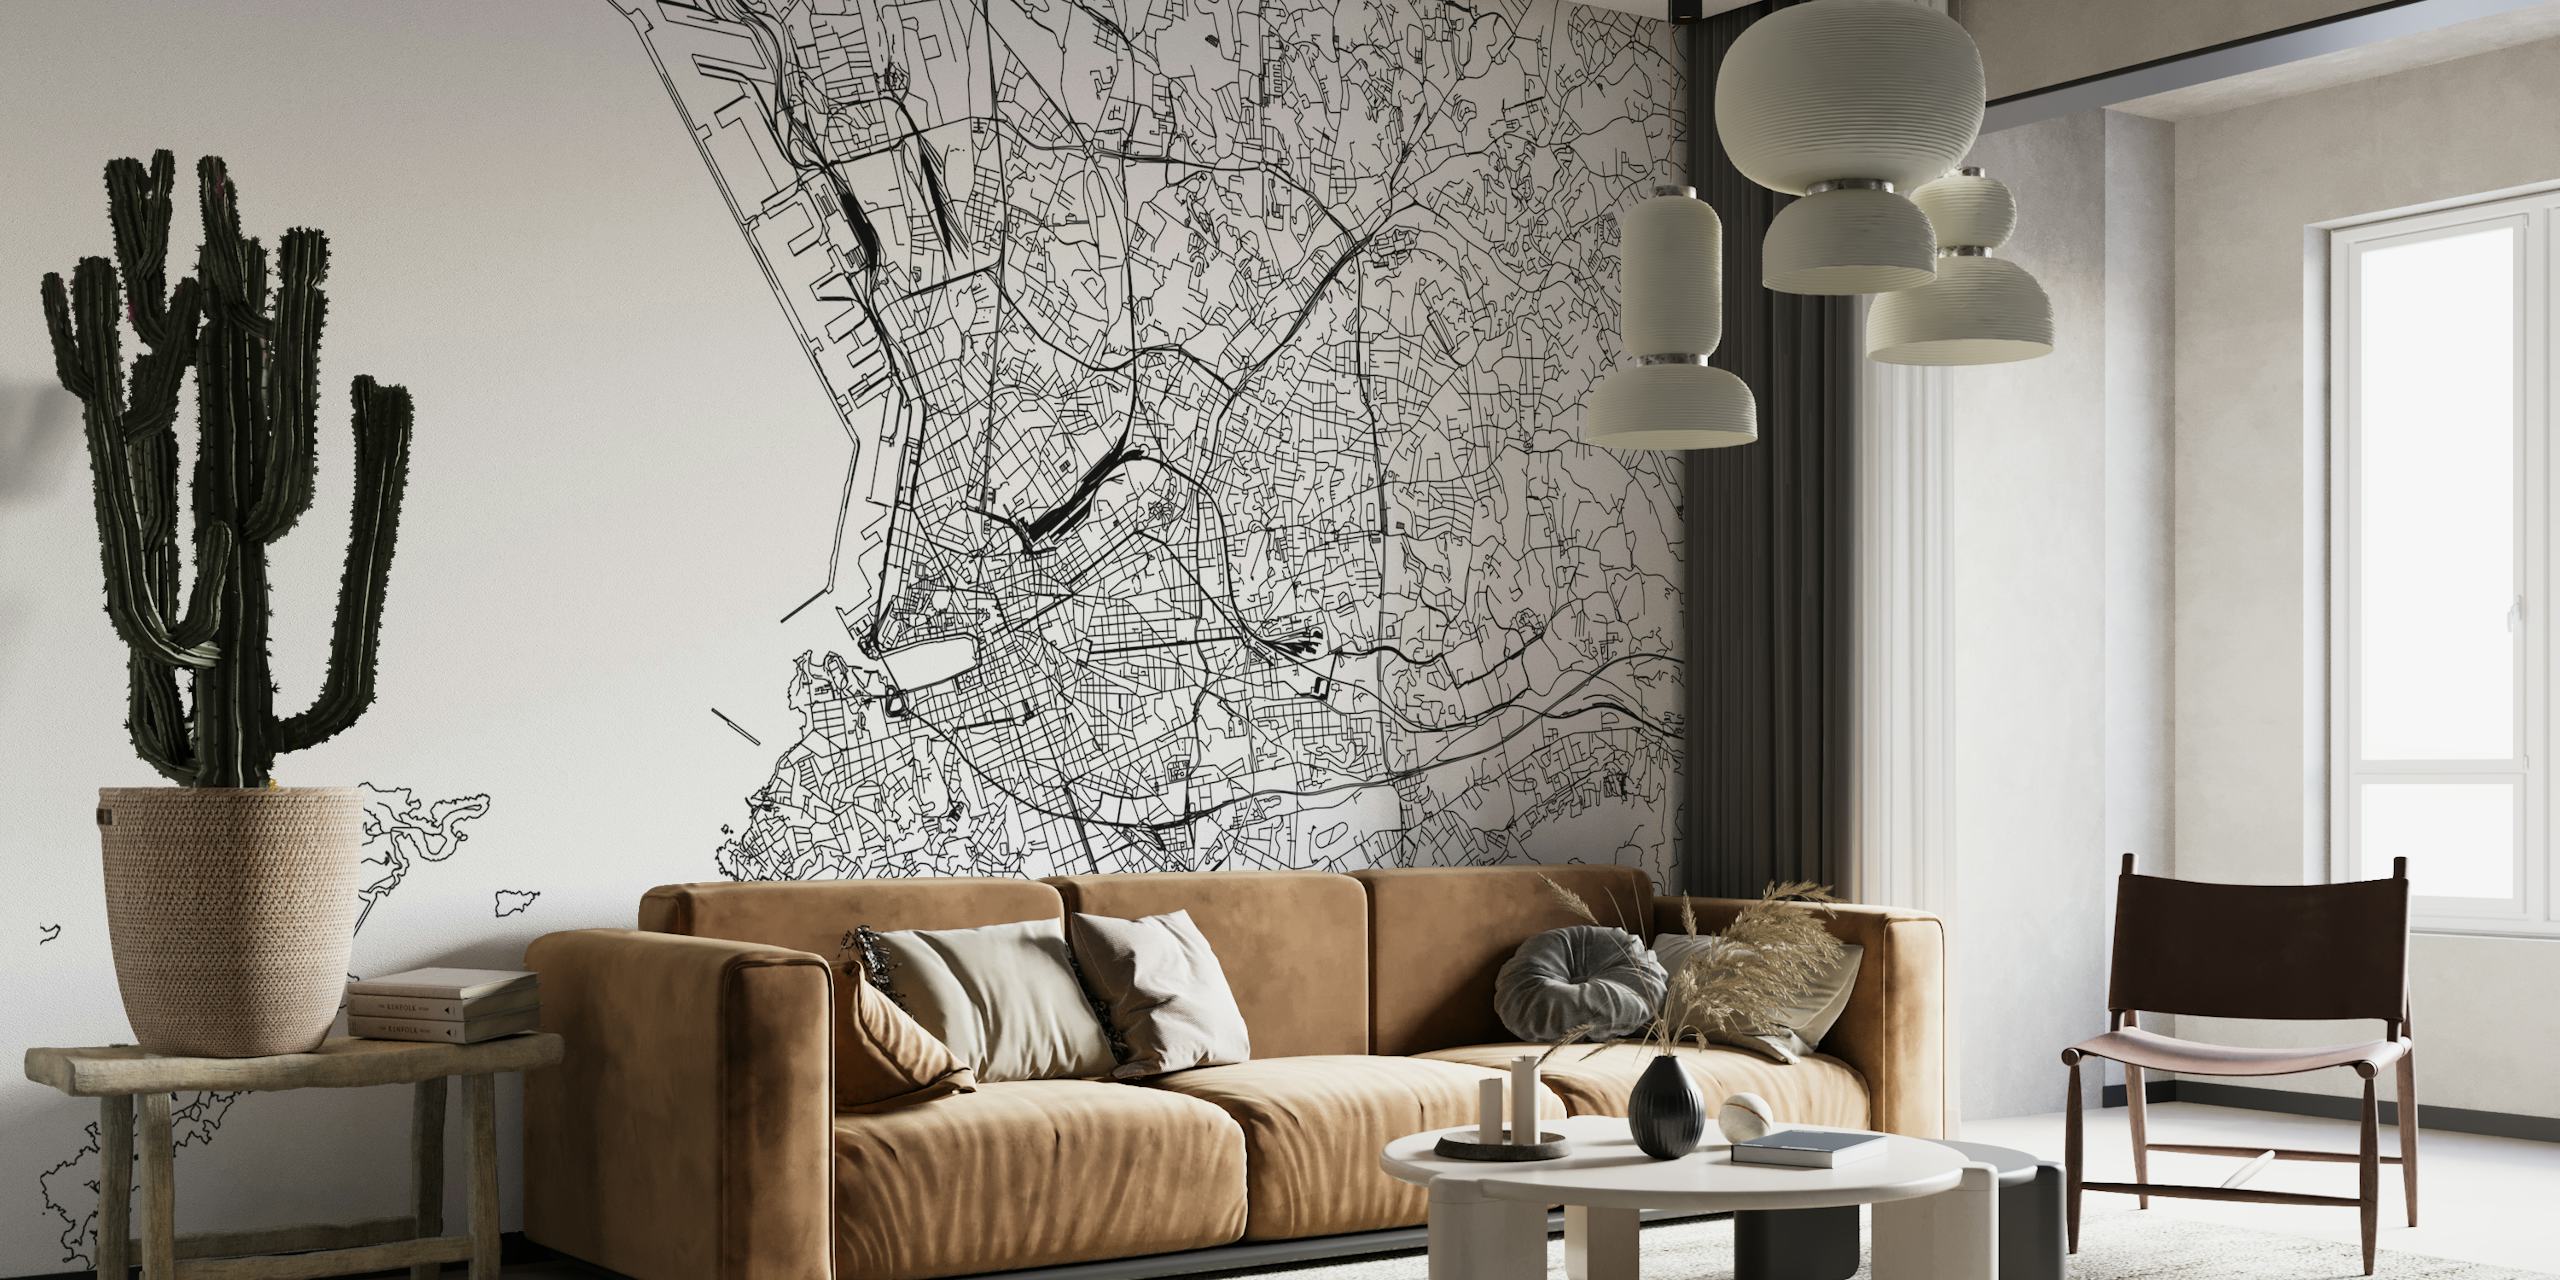 Mappa dettagliata in bianco e nero del murale di Marsiglia per la decorazione d'interni.